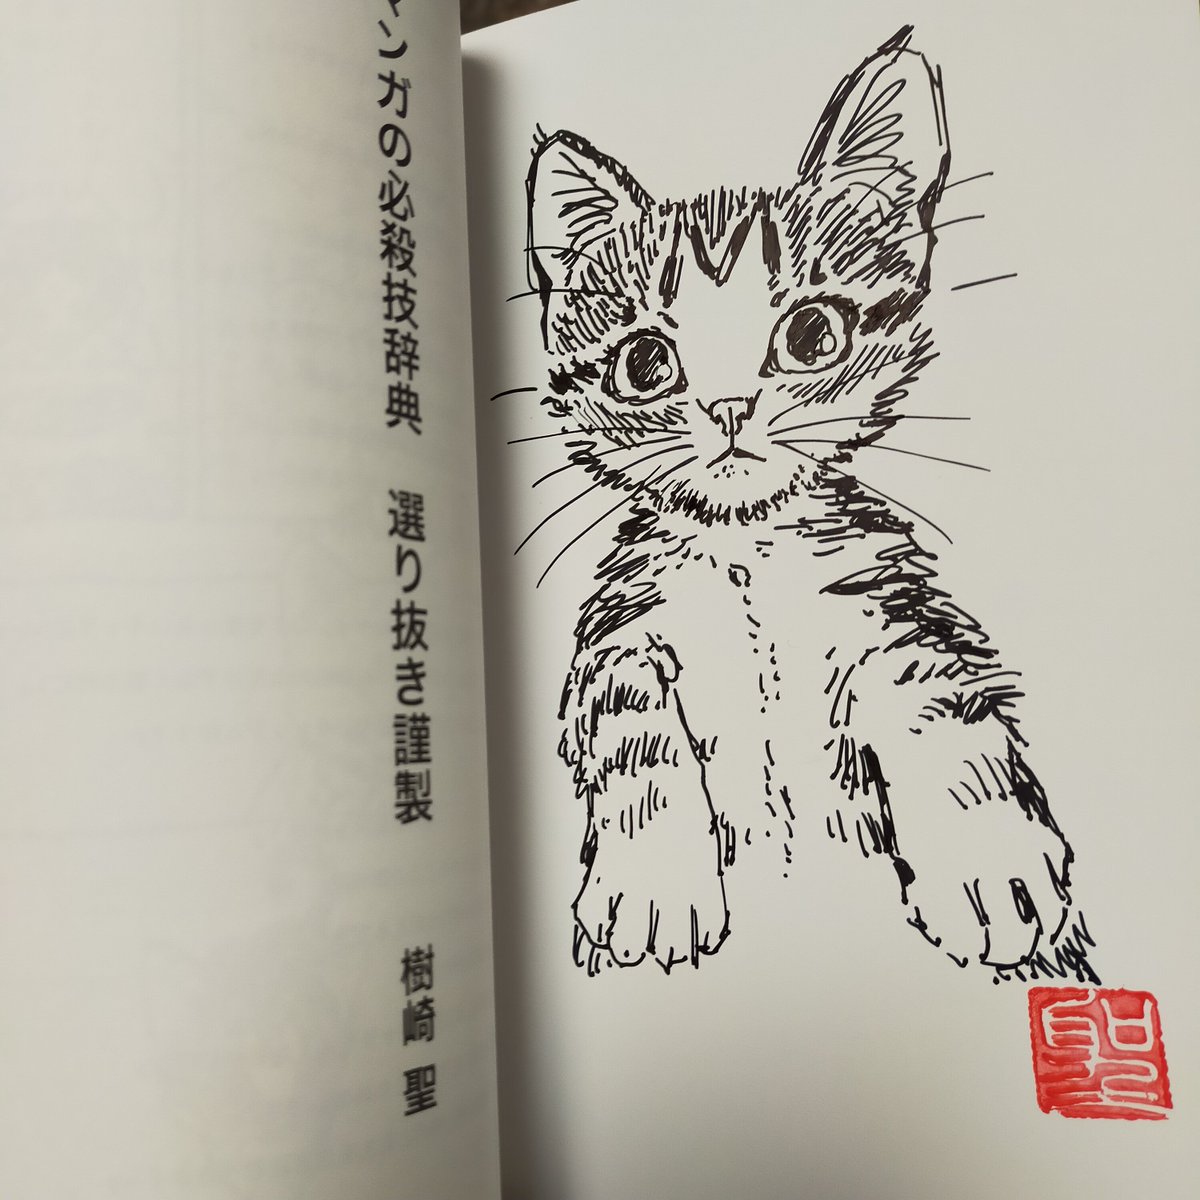 サイン本はこんなですー
同じ絵を描くの苦手なんです。
絵が死んじゃうので。
#マンガの必殺技辞典選り抜き謹製 #CatCuts https://t.co/tsAVYbyR2V 